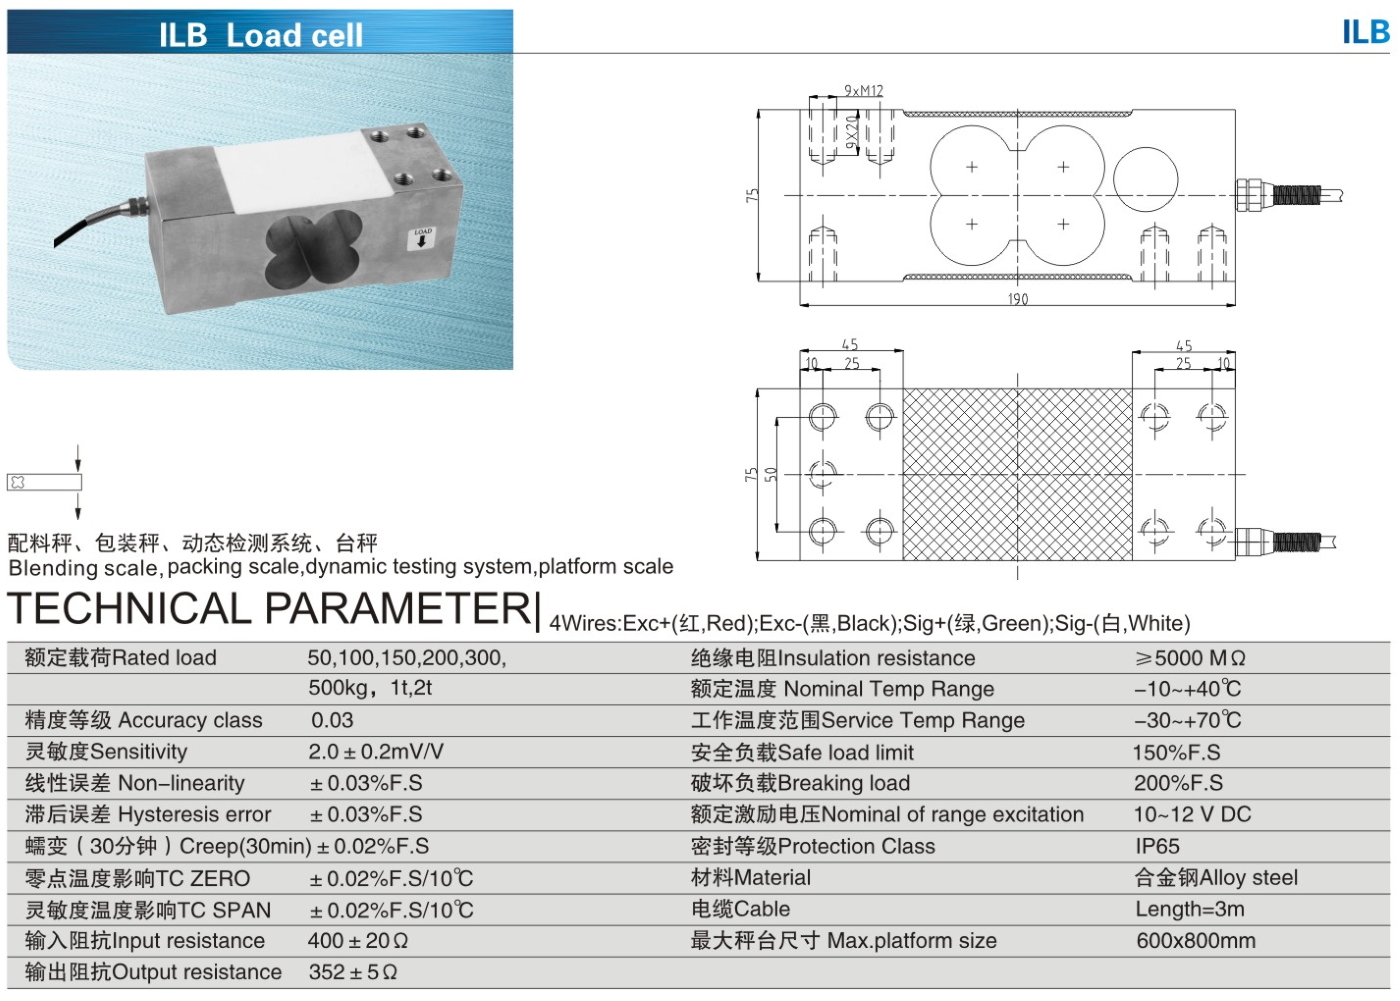 img/loadcell-images/alloysteel-singlepoint/KELI_ILB_Loadcell-TTM_Teknoloji.jpg